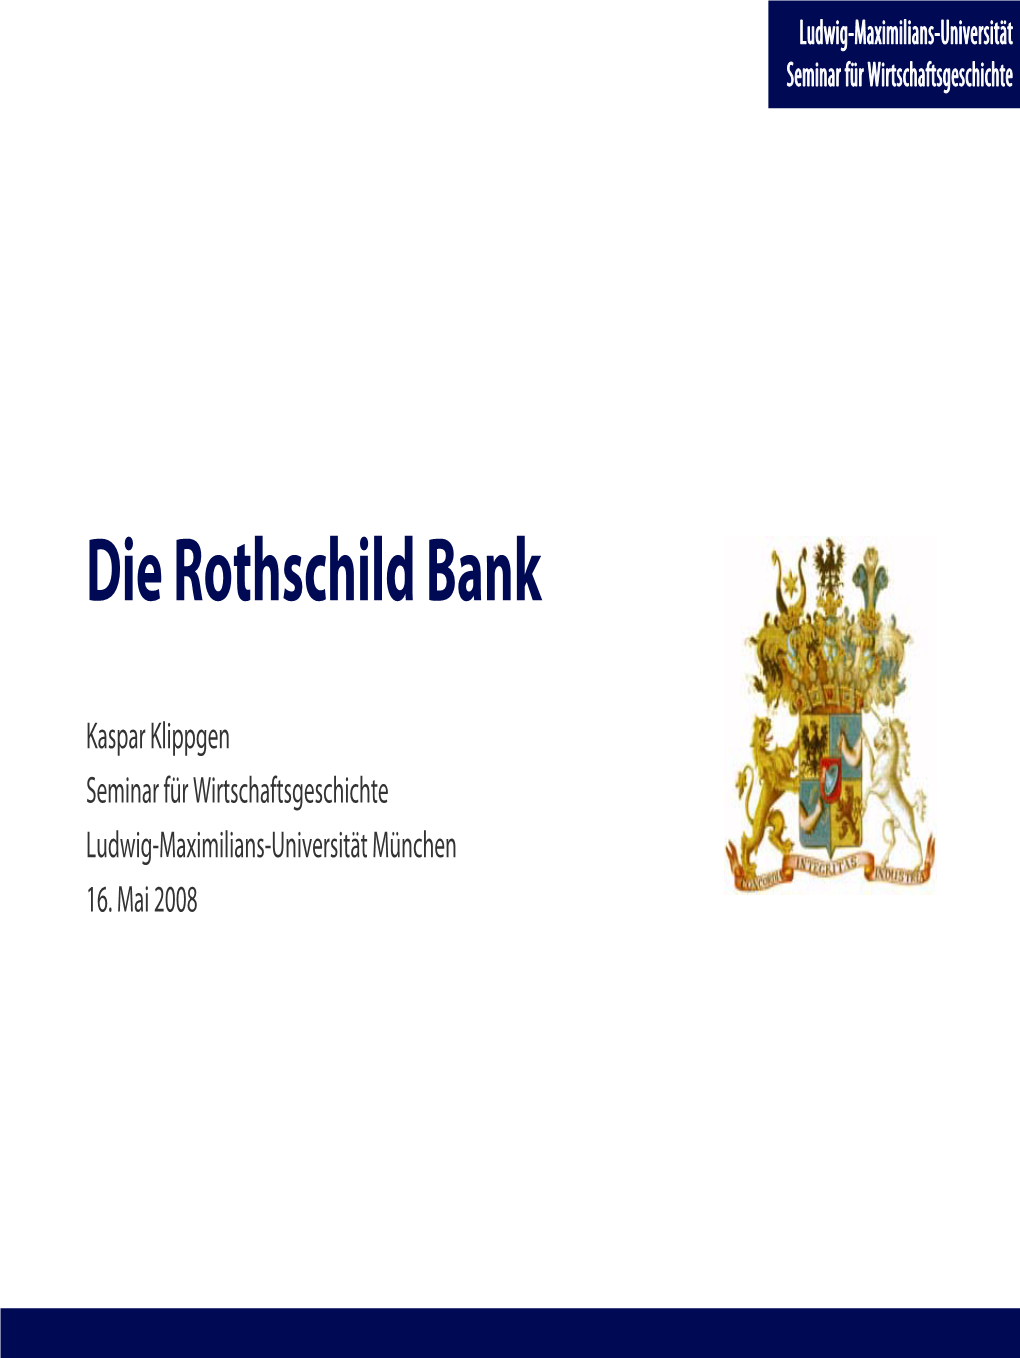 Die Rothschild Bank